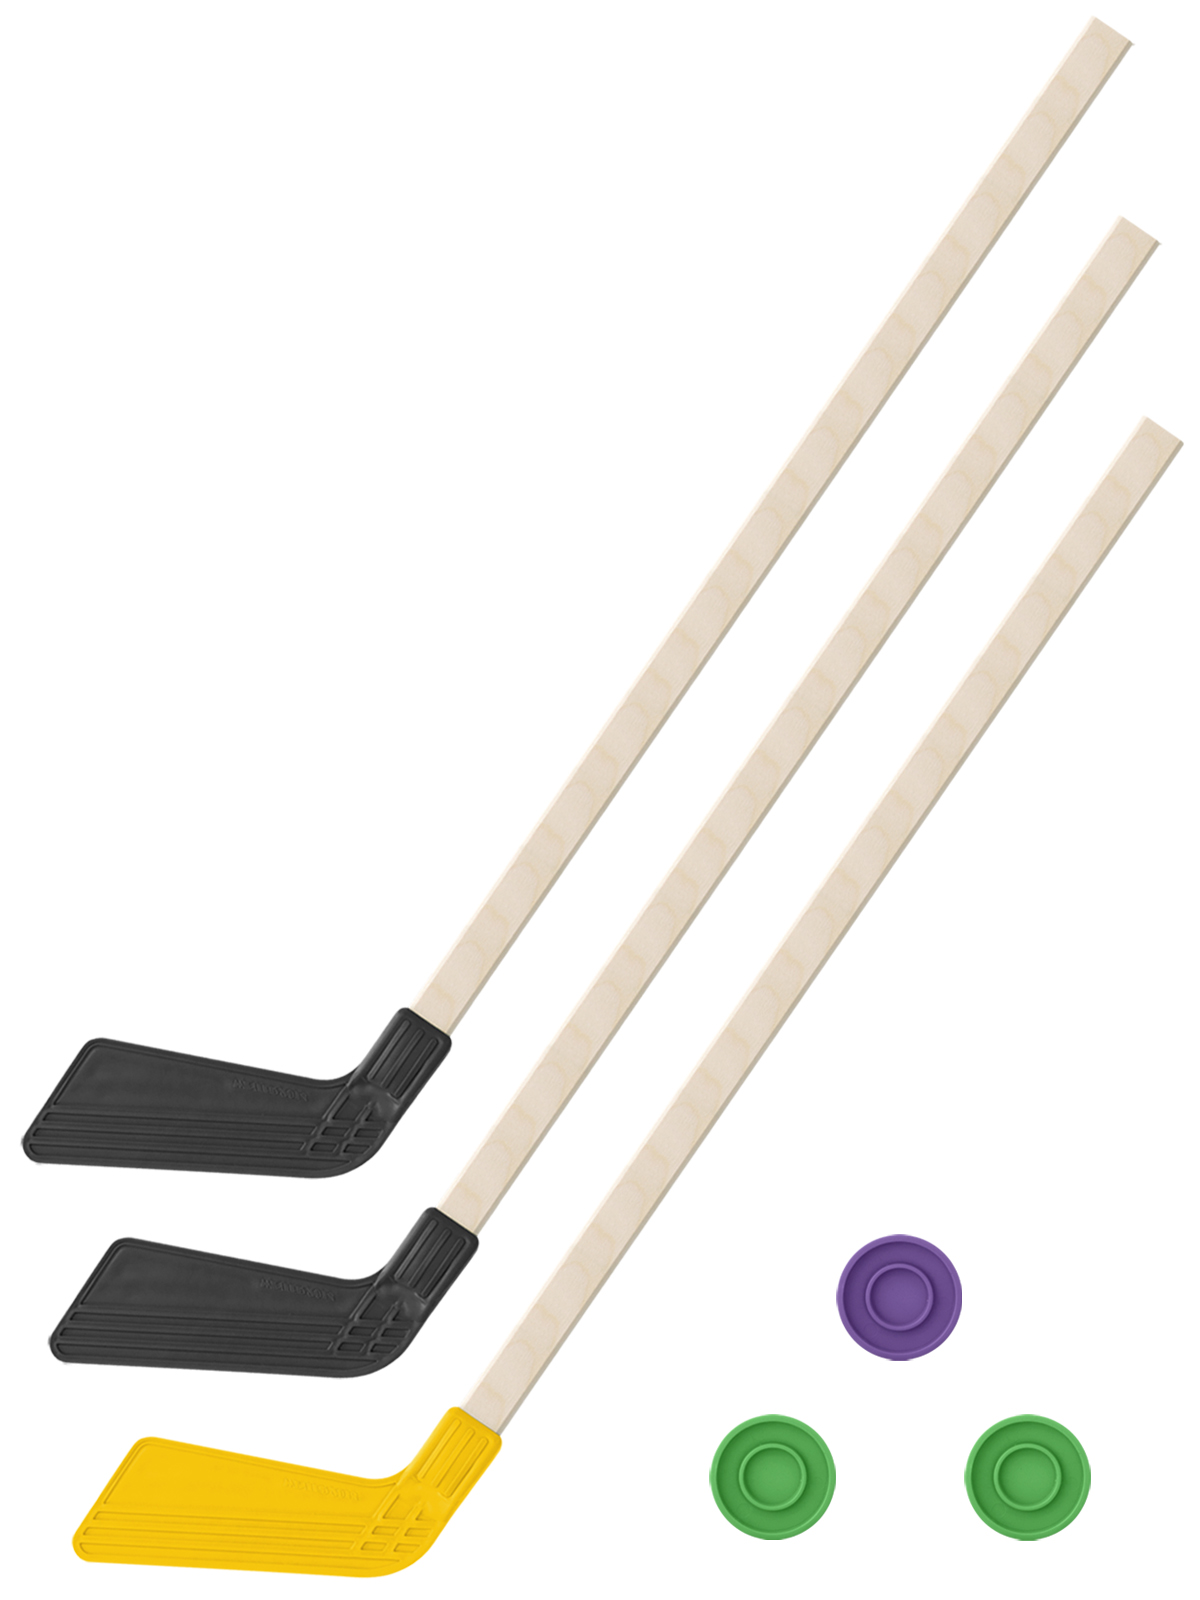 Детский хоккейный набор Задира-плюс 3 в 1 Клюшка хоккейная 80 см (2черн, 1жел) + 3 шайбы детский хоккейный набор задира плюс 3 в 1 клюшка хоккейная 80 см 2 черн 1крас 3 шайбы